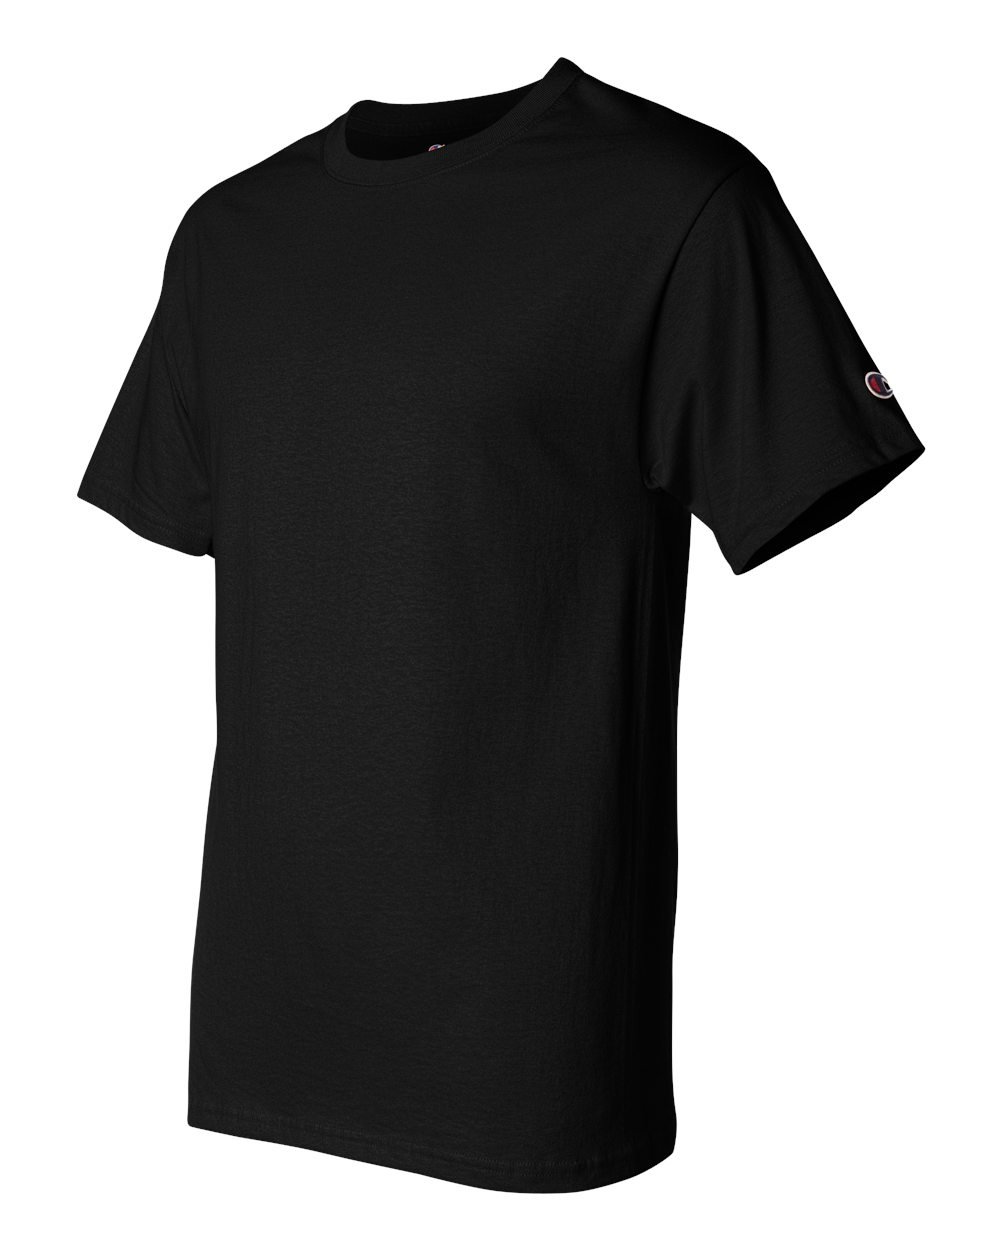 Champion 6.1 oz. Tagless T-Shirt, Black, M